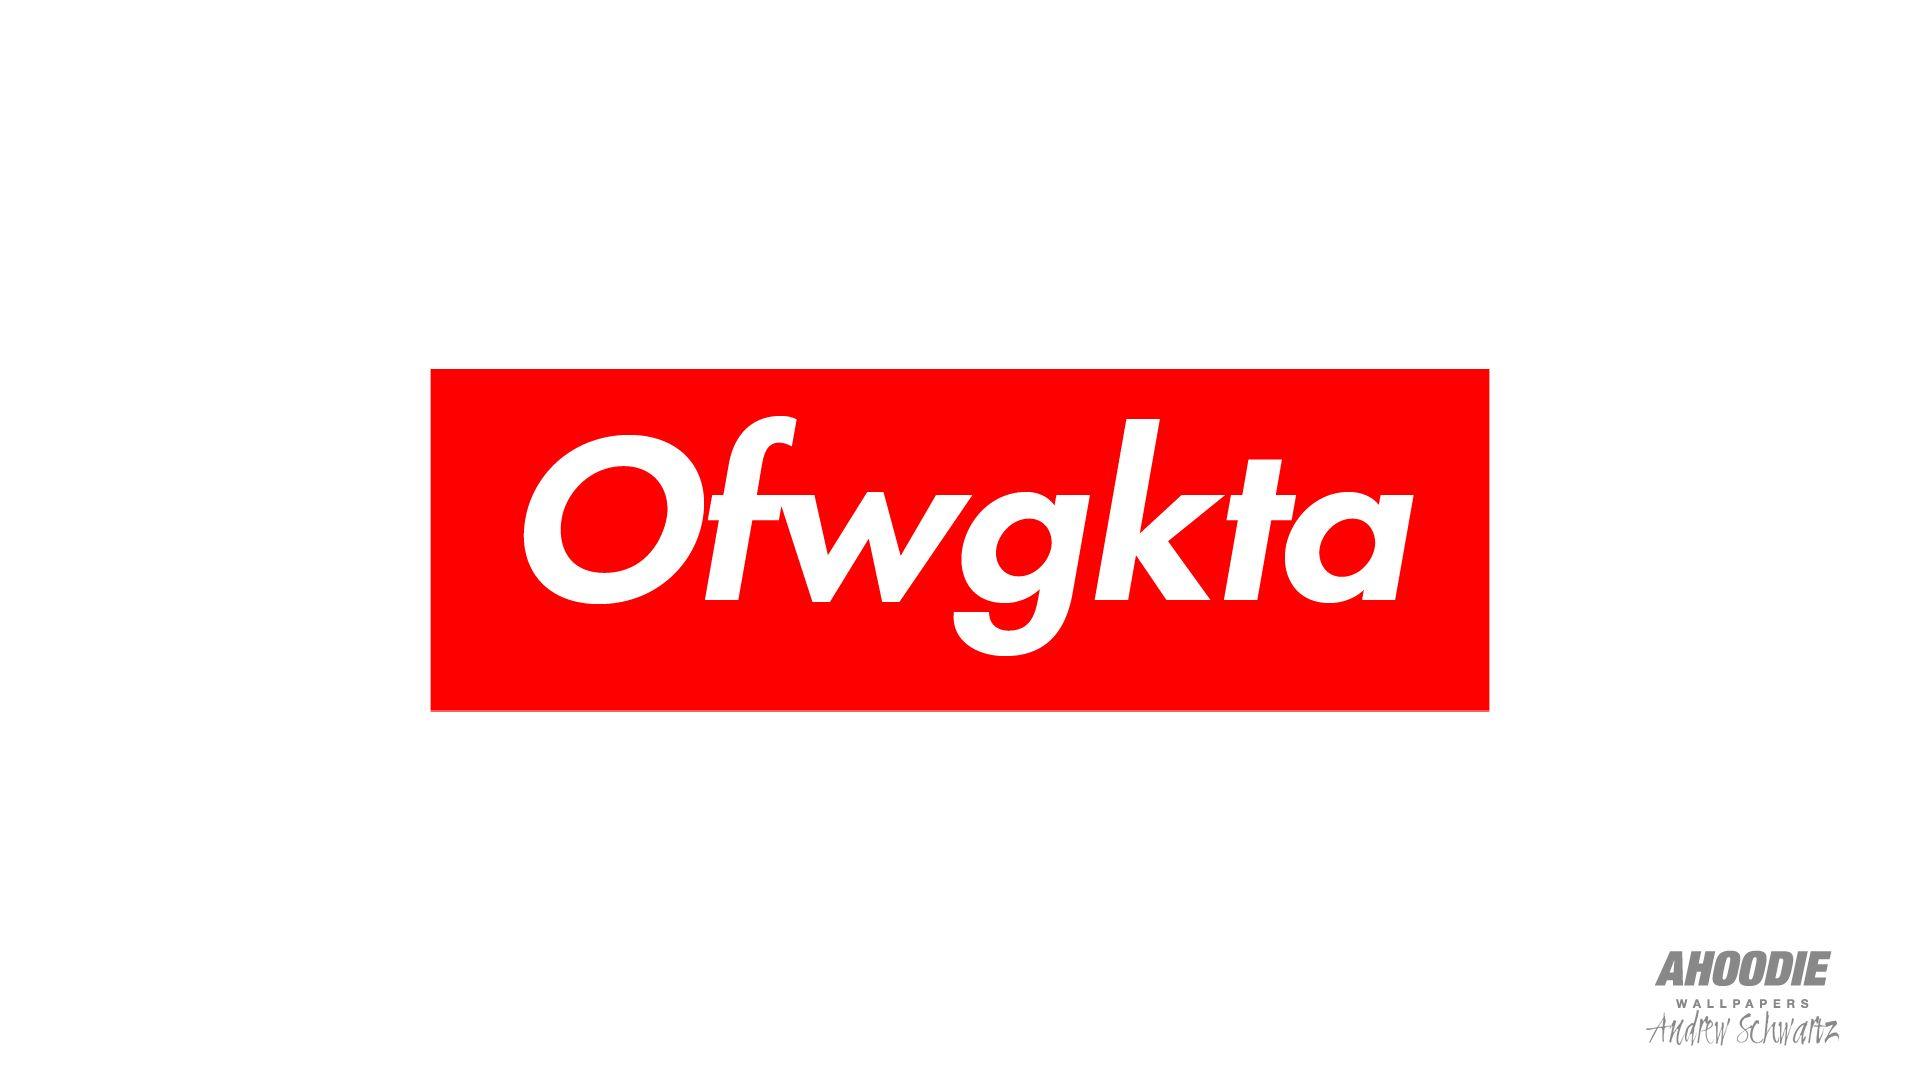 Ofwgtka Logo - Image - OFWGKTA Supreme.jpg | Ofwgkta Wiki | FANDOM powered by Wikia